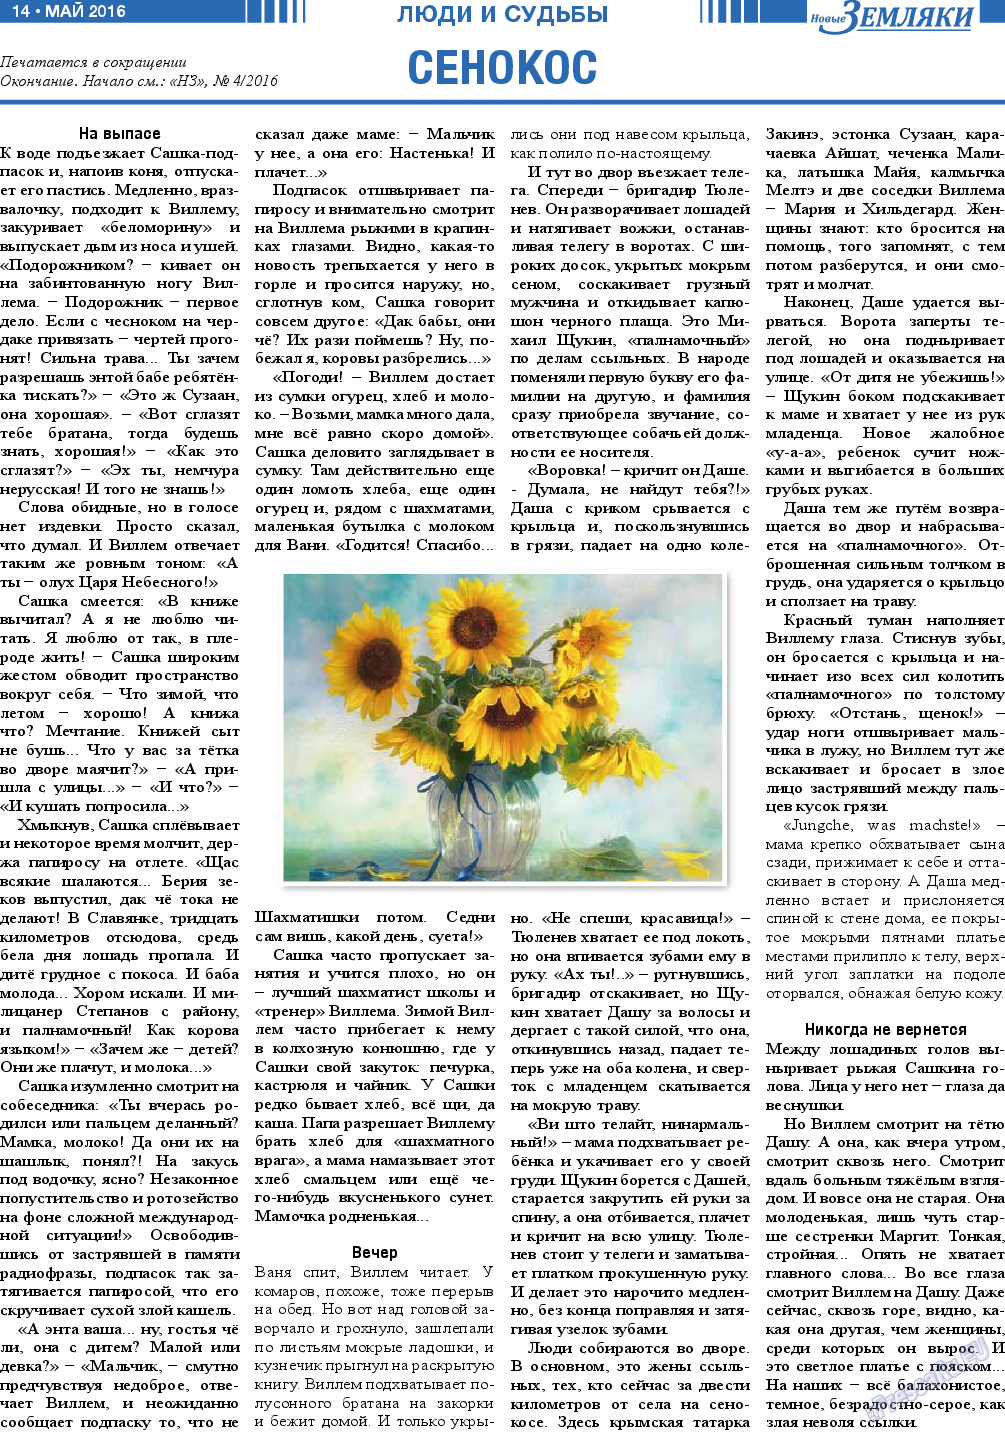 Новые Земляки, газета. 2016 №5 стр.14